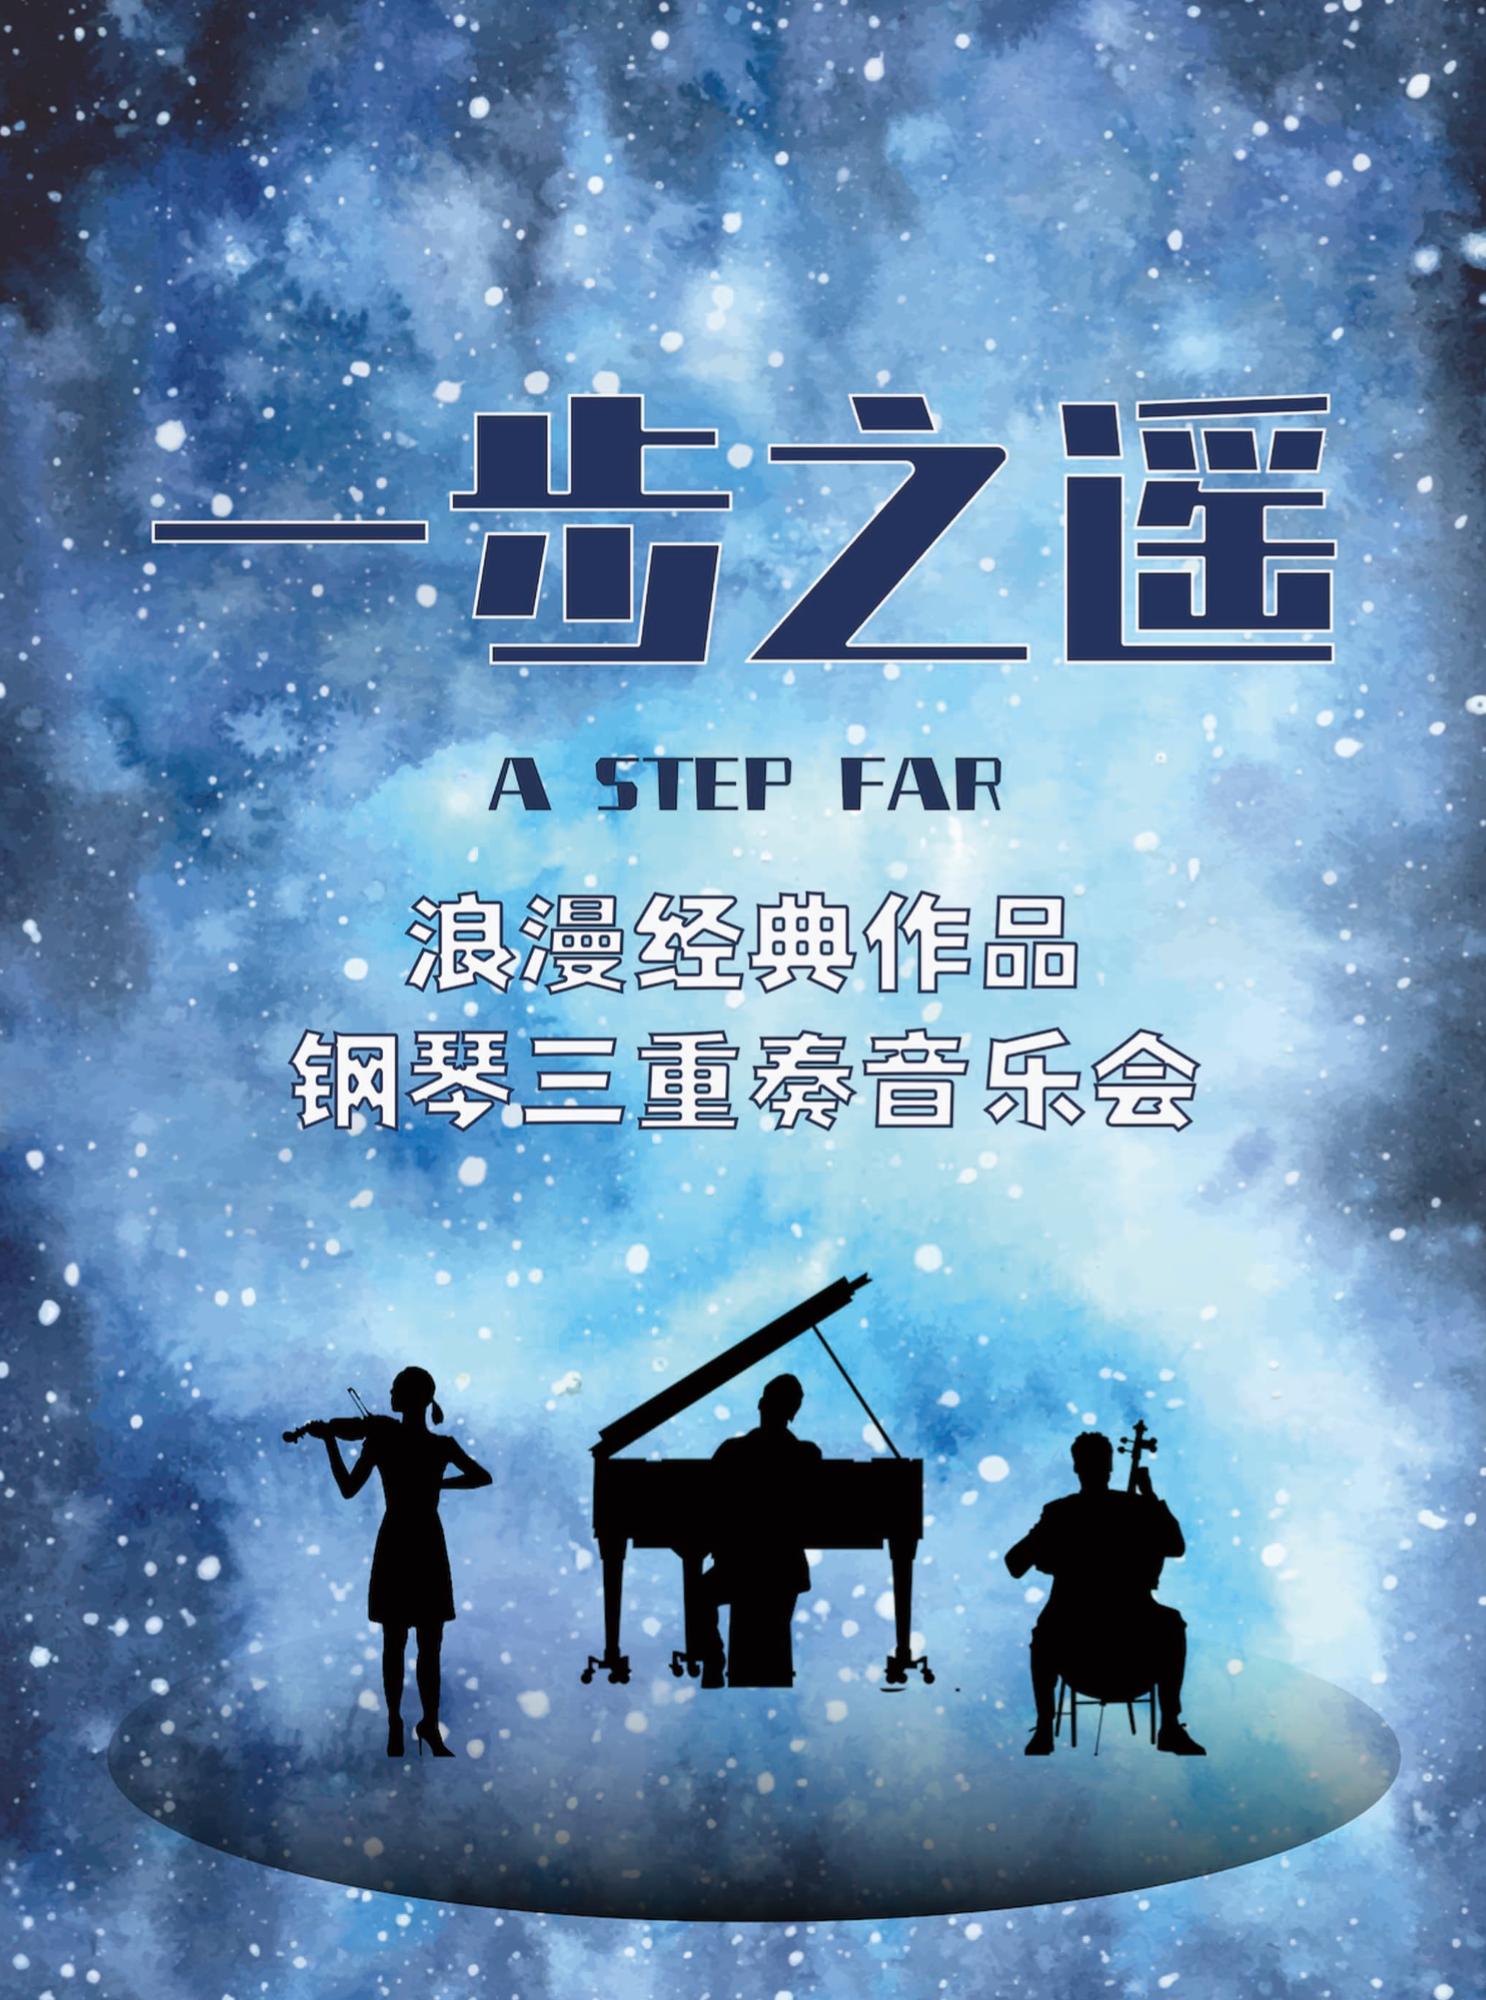 《一步之遥》钢琴三重奏音乐会北京站